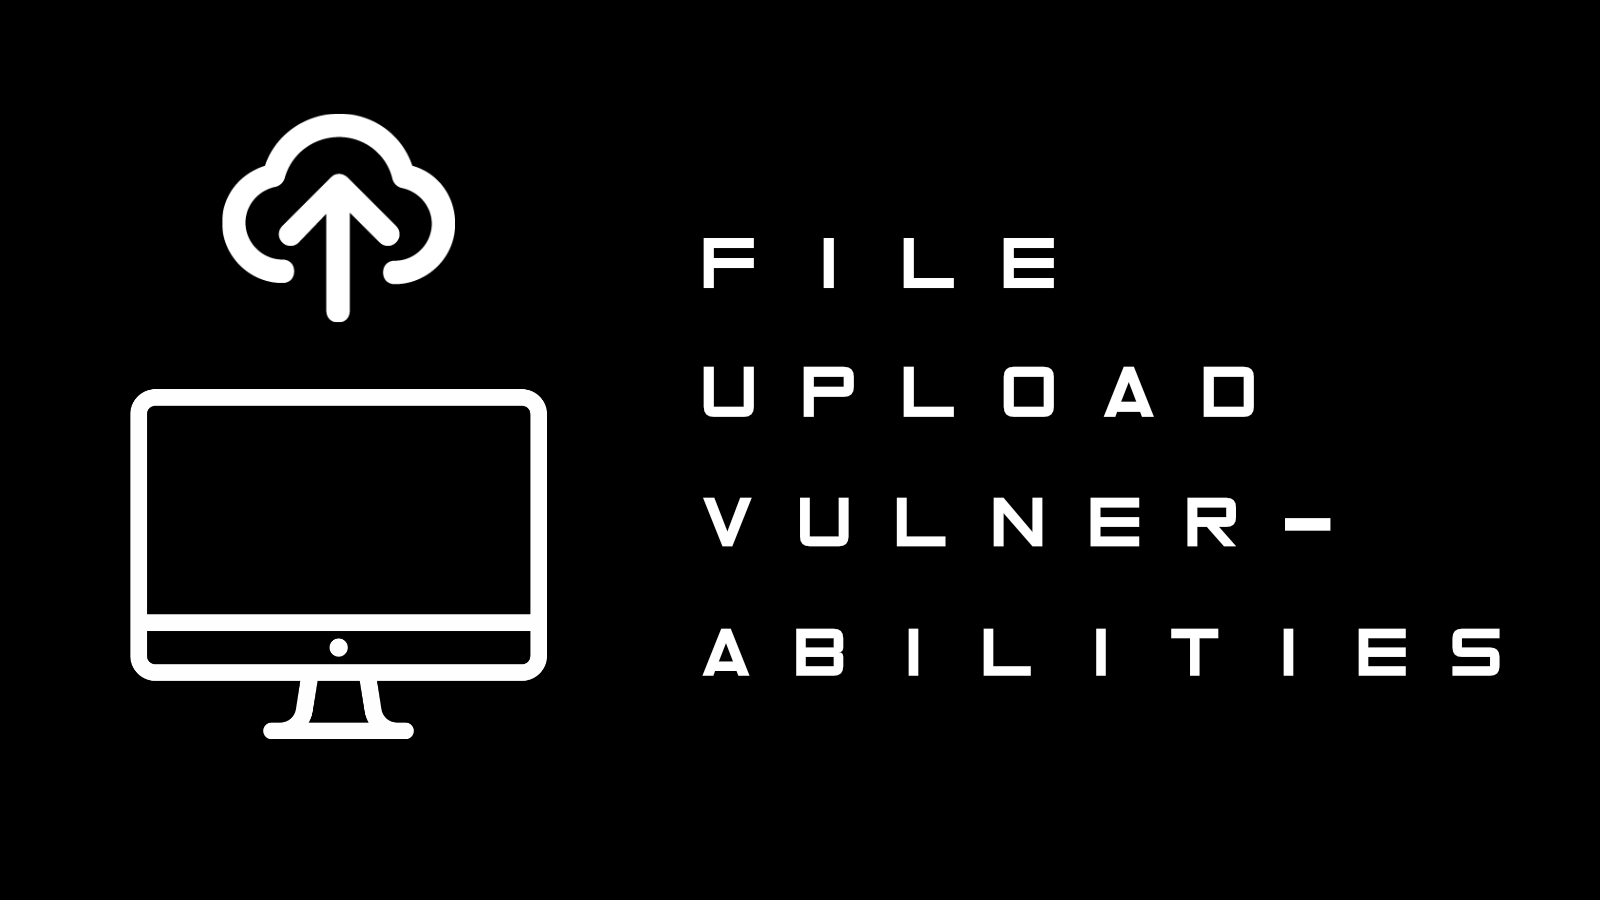 Upload Vulnerabilities